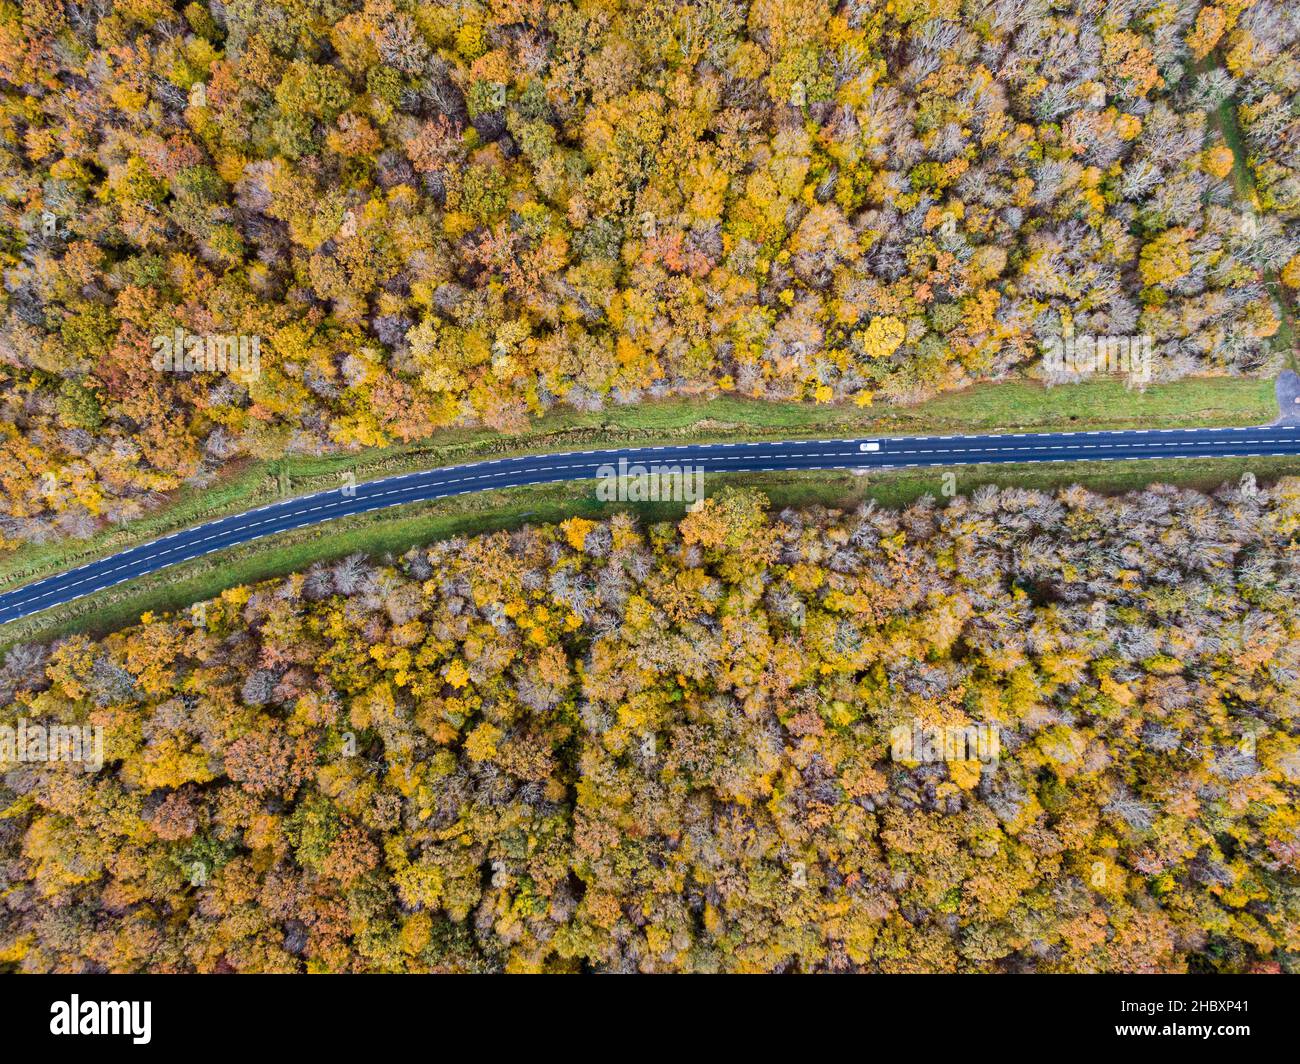 Strada forestale con auto bianca durante l'autunno. Veduta aerea strada che attraversa una foresta di alberi decidui gialli e dorati, autunno Foto Stock